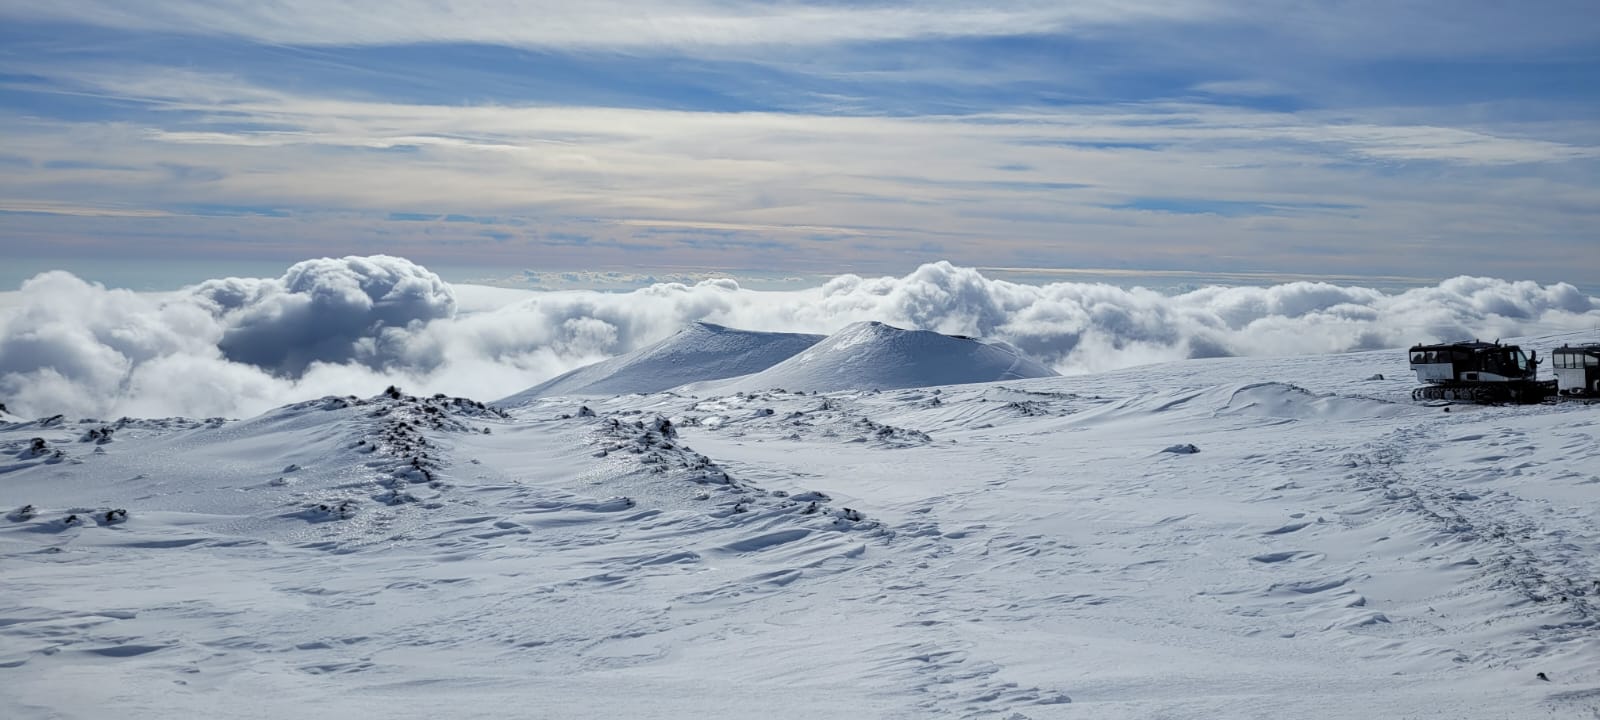 Neve Etna Sud Vulcano. Funivia dell'Etna + Gatto delle Nevi crateri